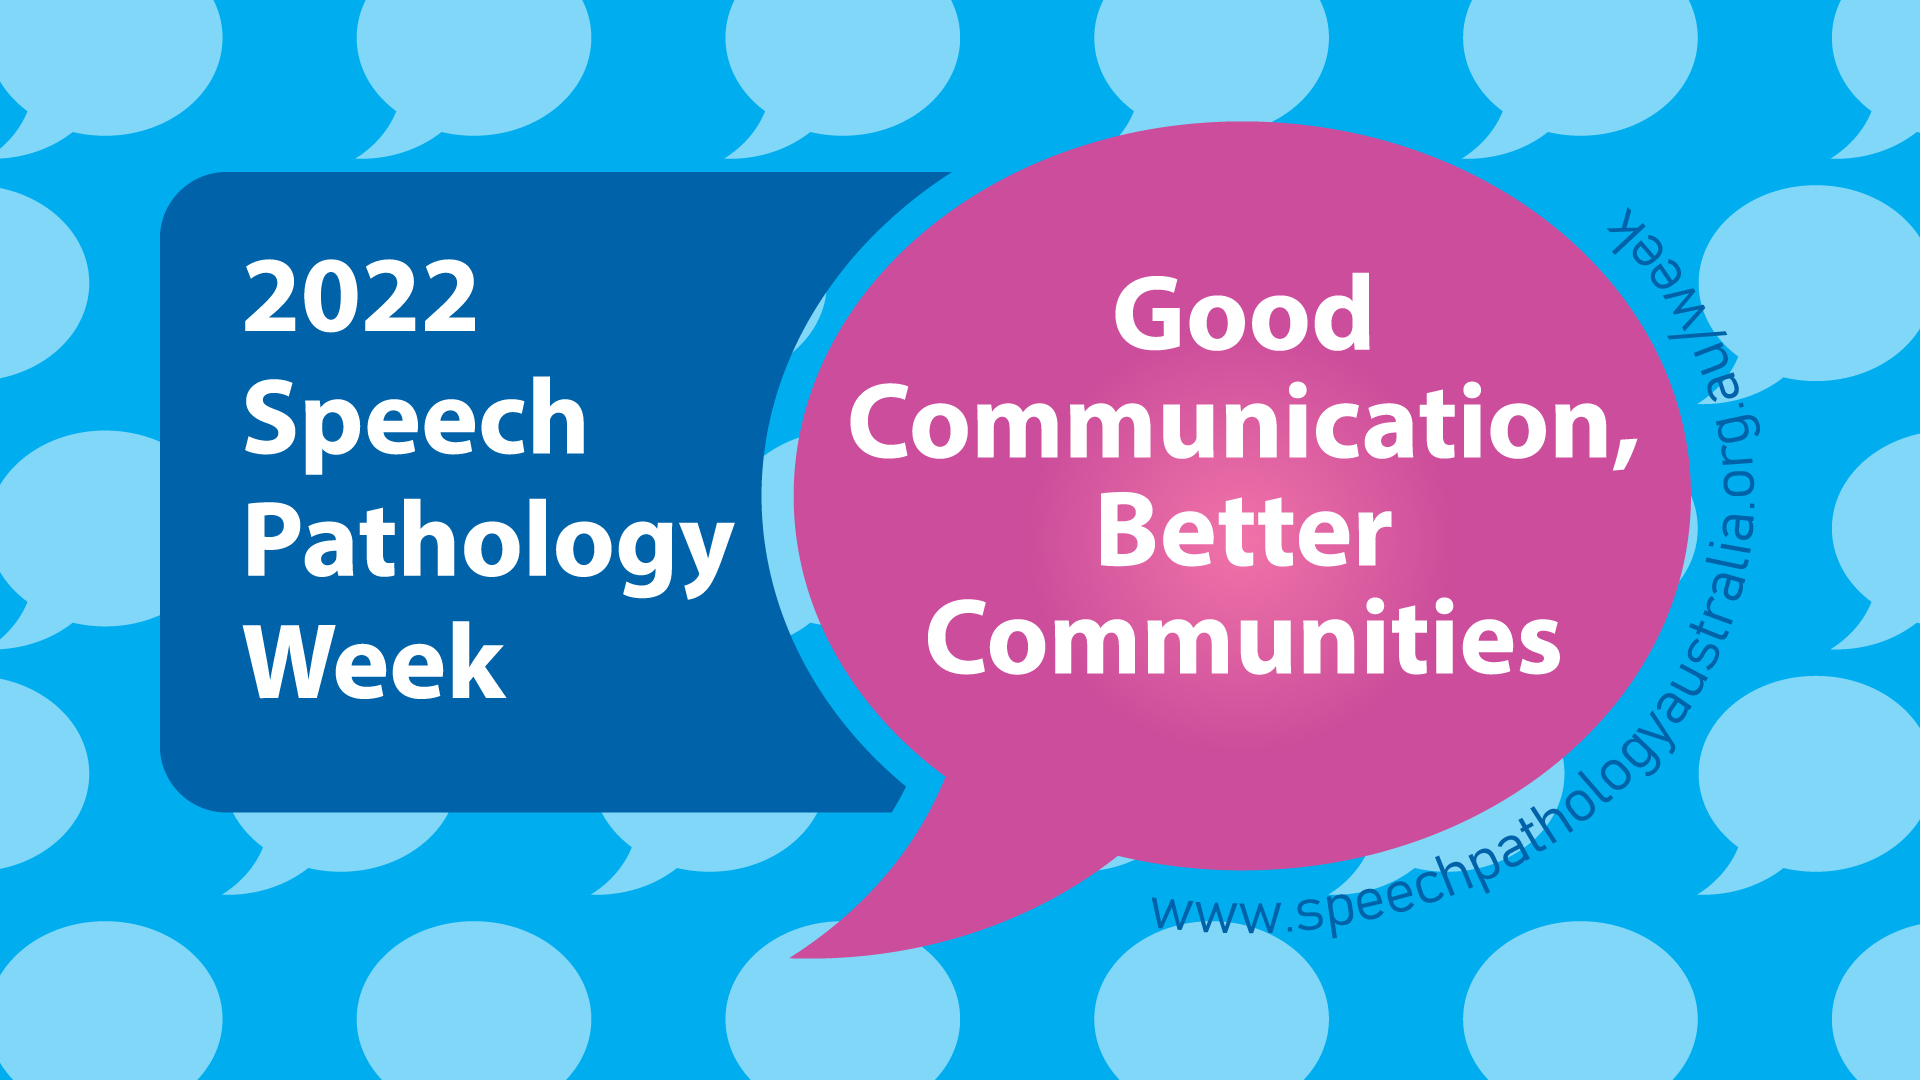 Speech Pathology Week 2022 is near!